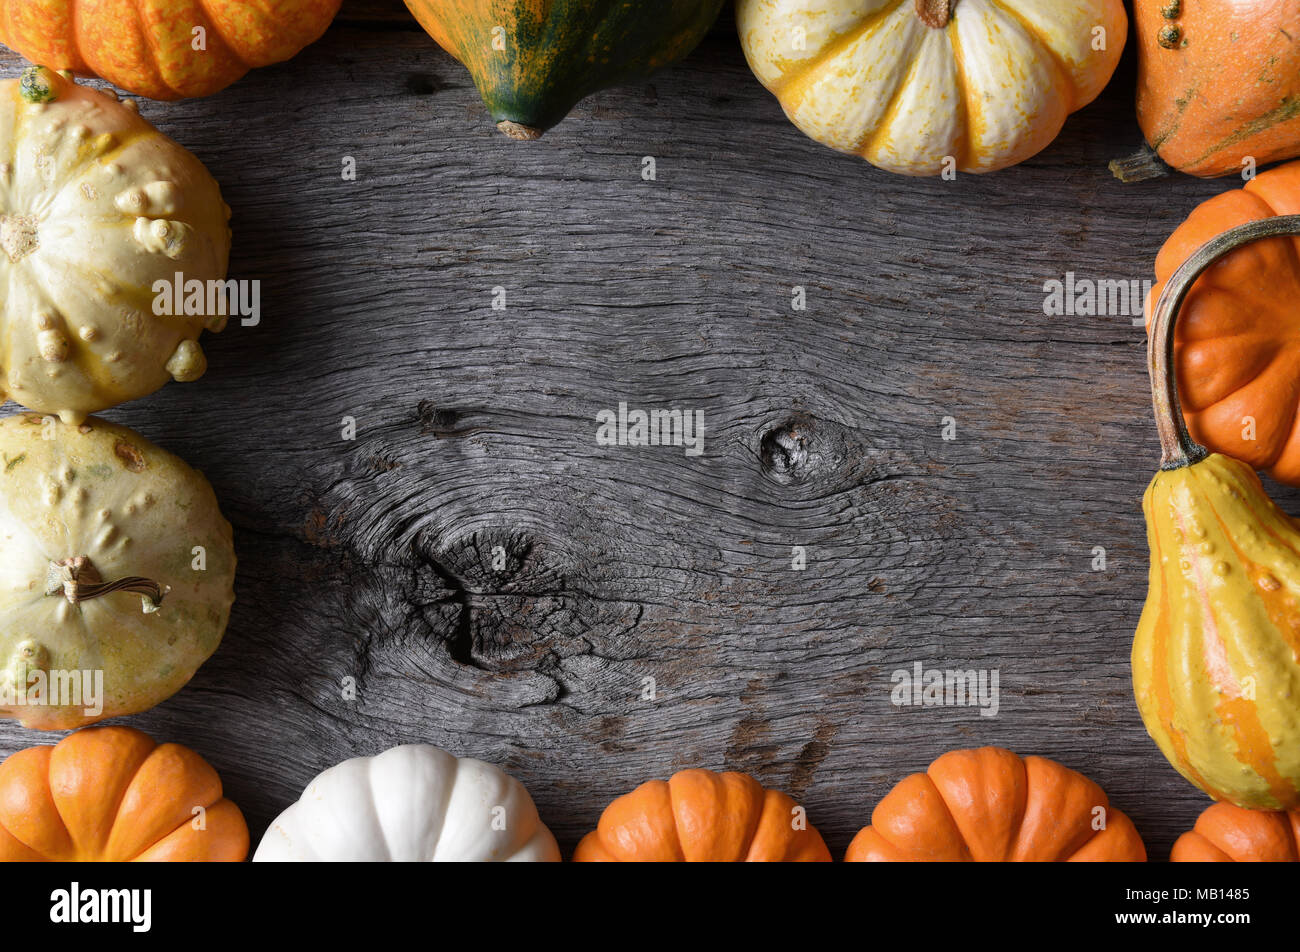 Shot Gros plan d'un groupe d'objets décoratifs Citrouilles, Courges et gourdes sur une table en bois rustique. Les légumes constituent un cadre. Banque D'Images